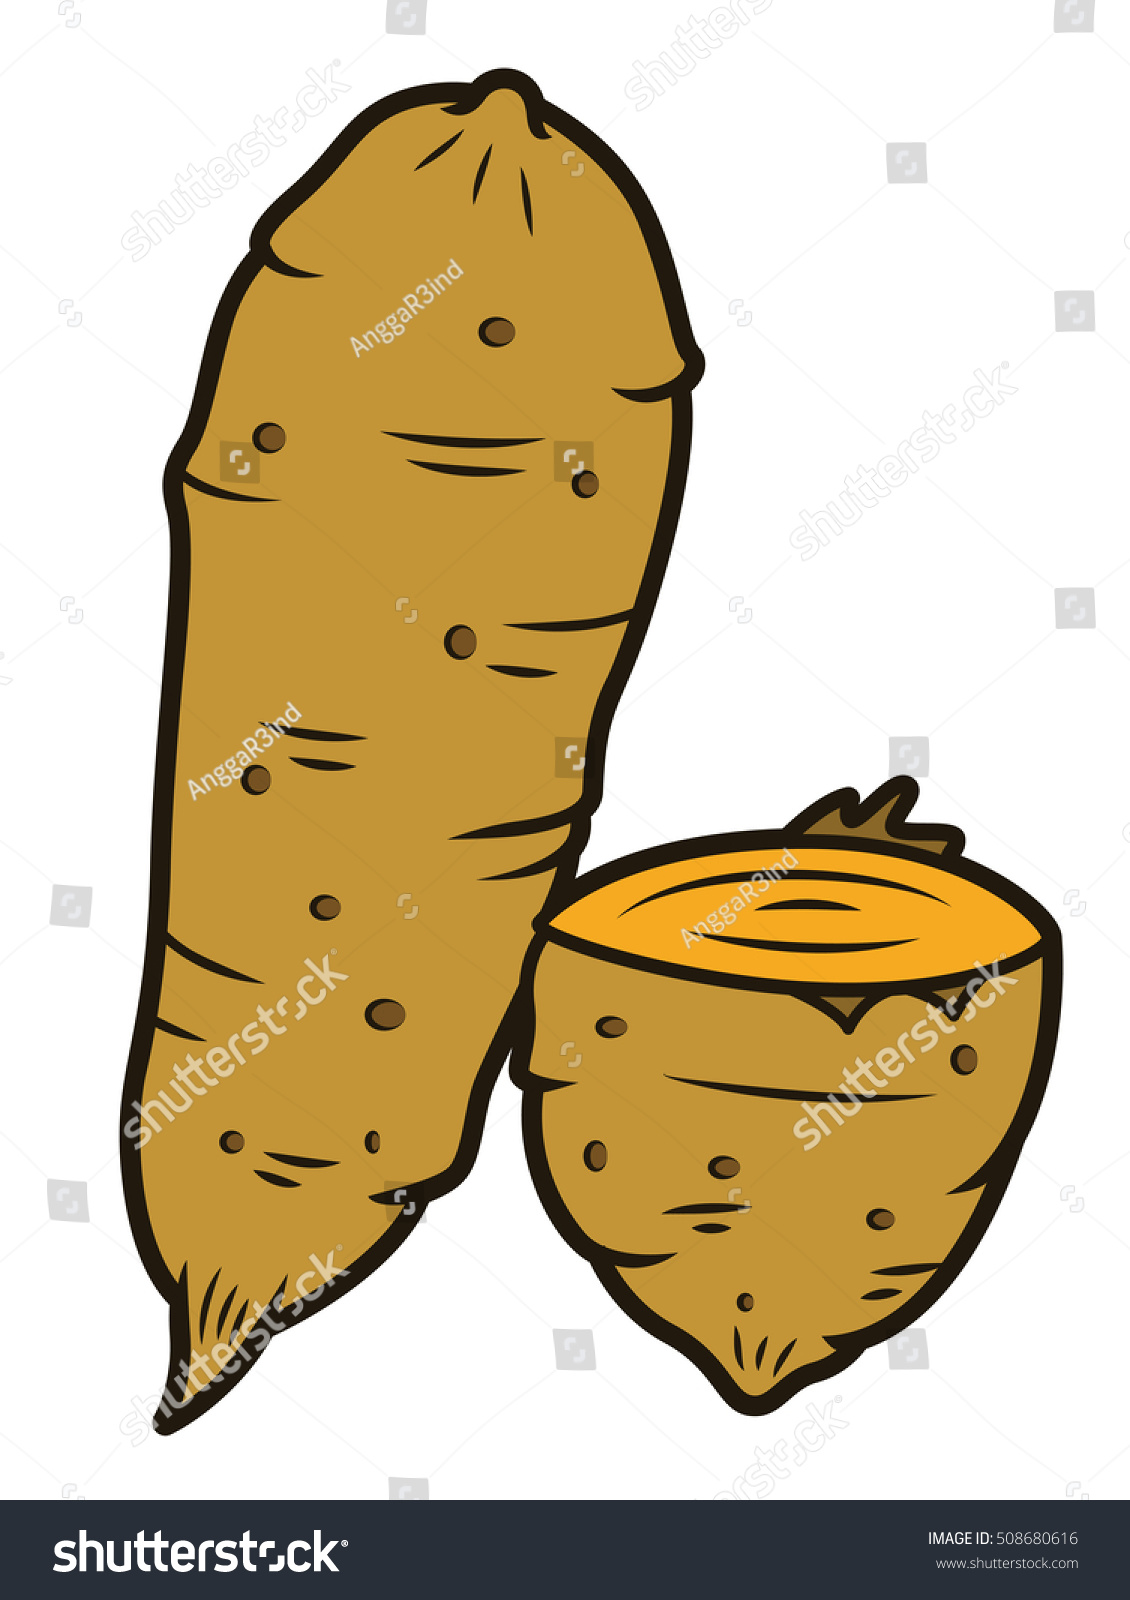 Sweet Potato Stock Vector Illustration 508680616 ...